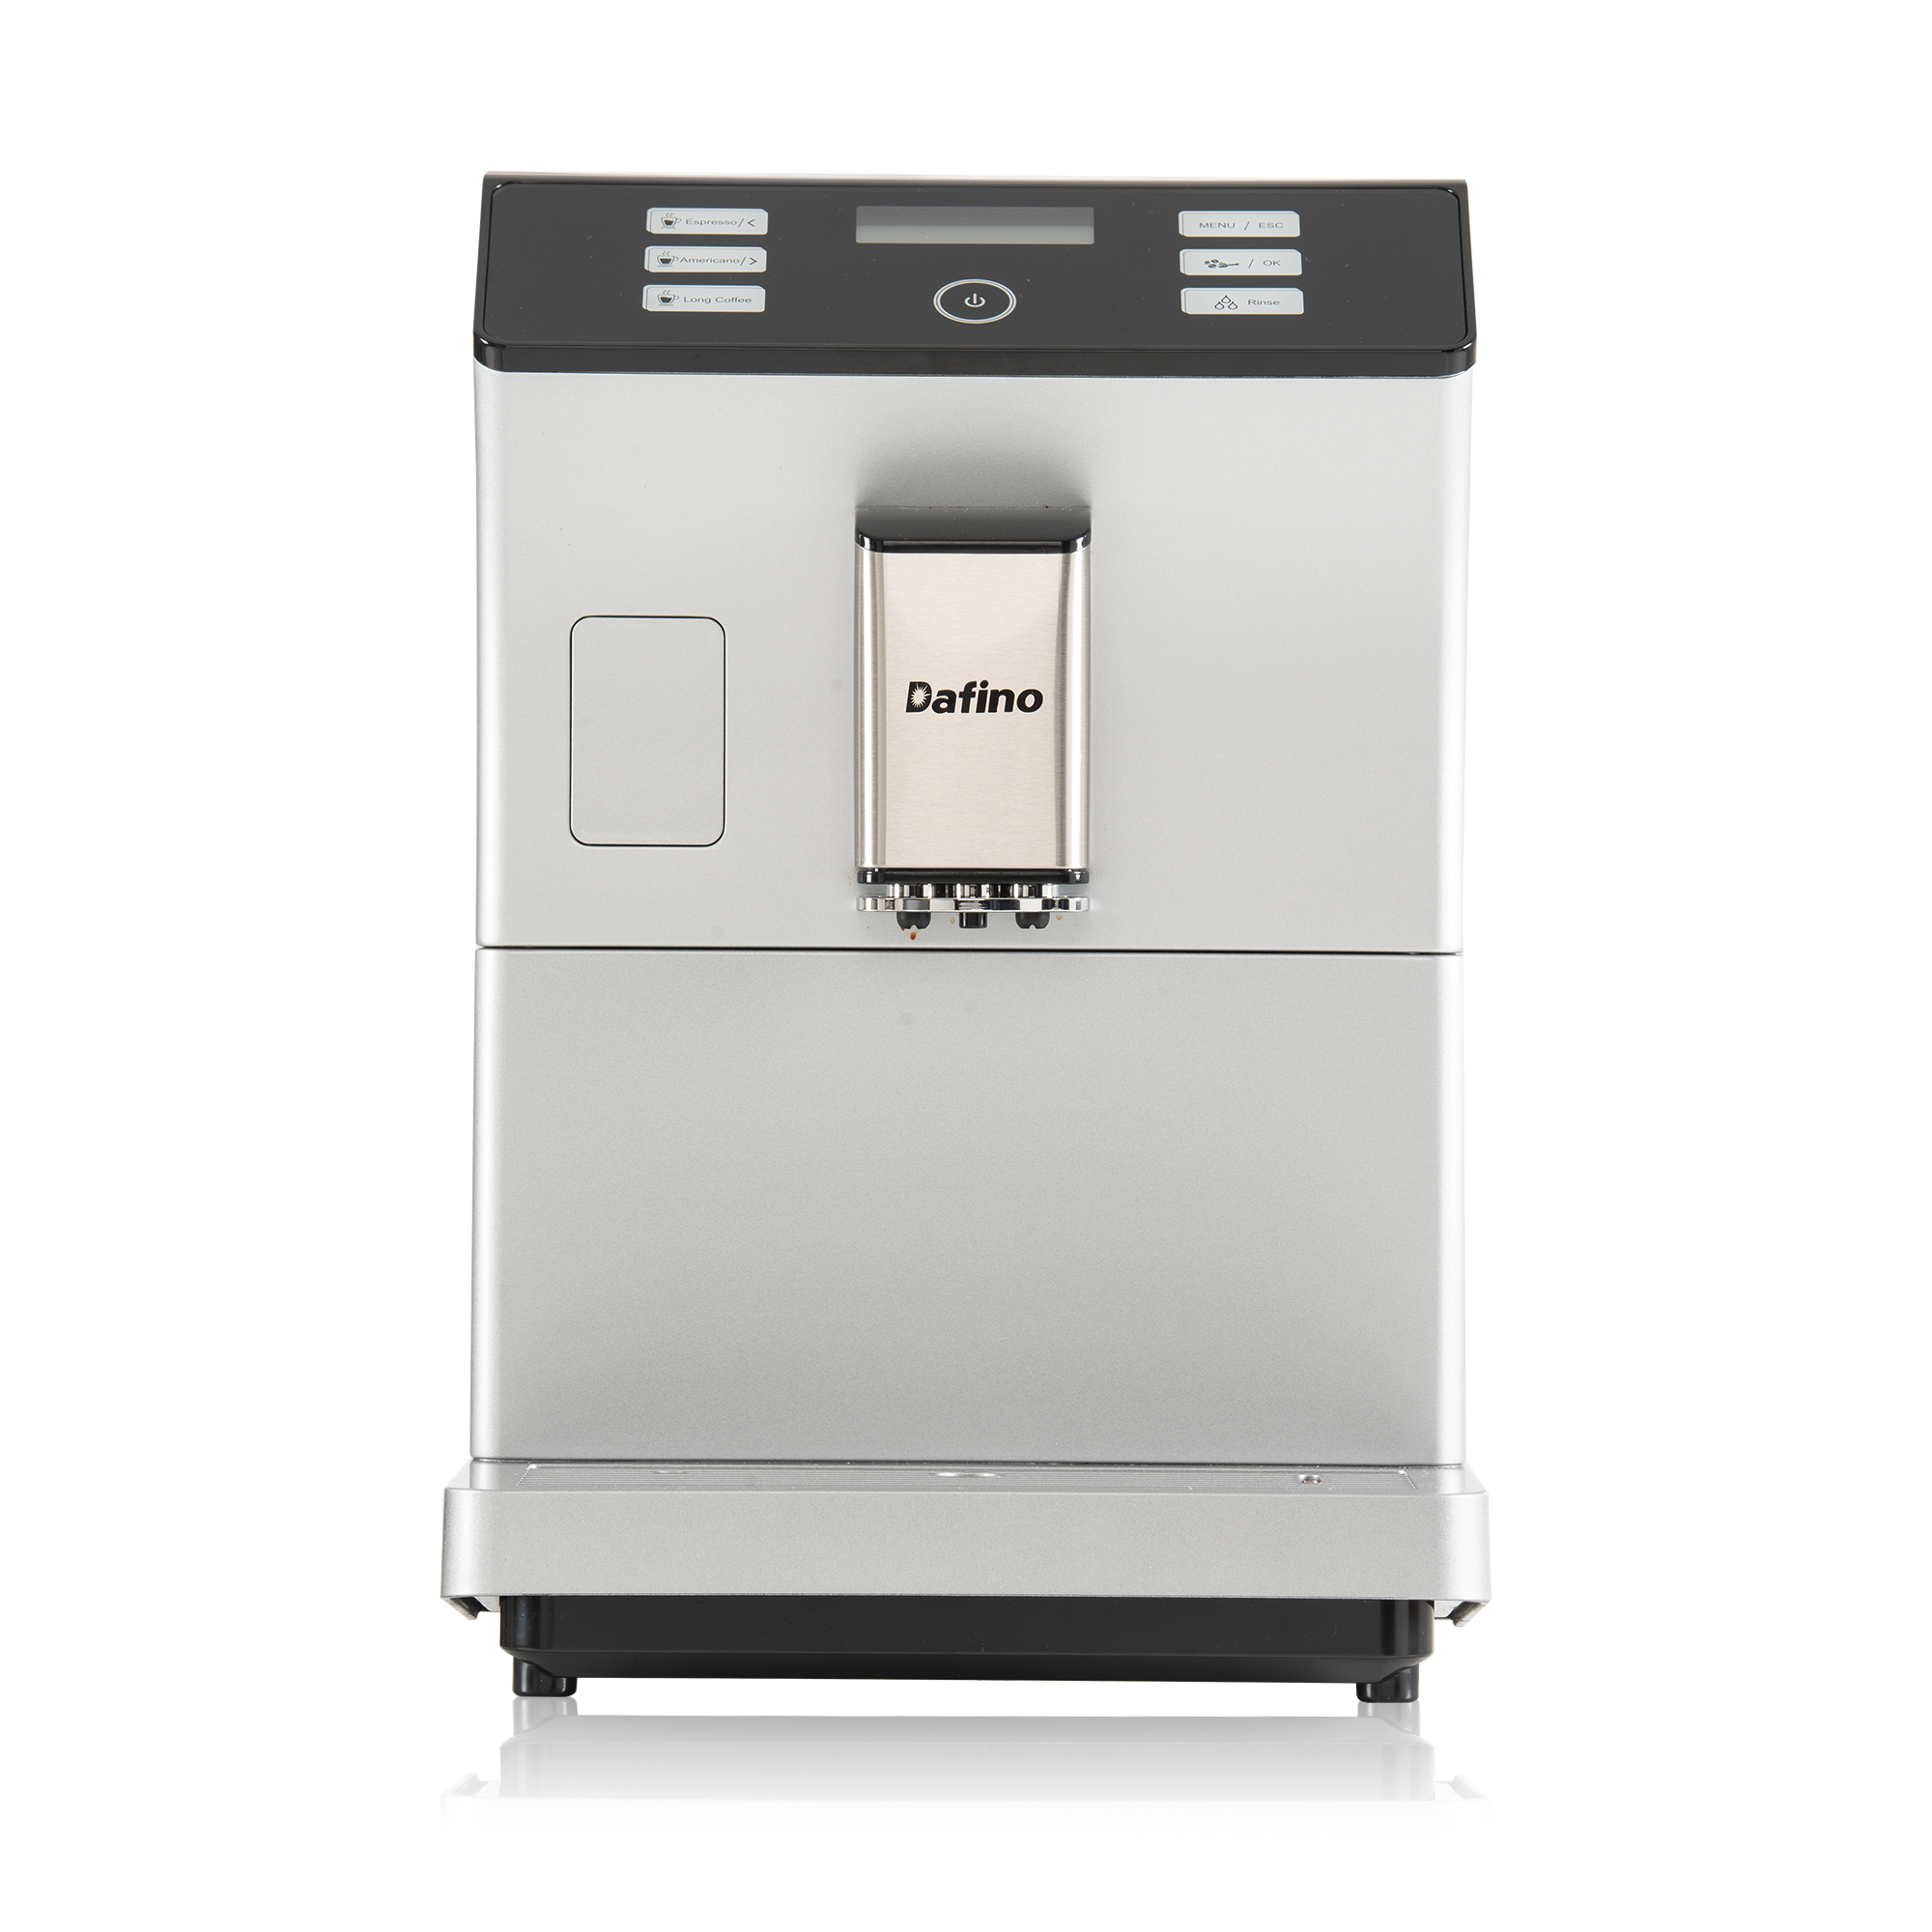 Dafino-206 Super Automatic Espresso  Coffee Machine, SILVER